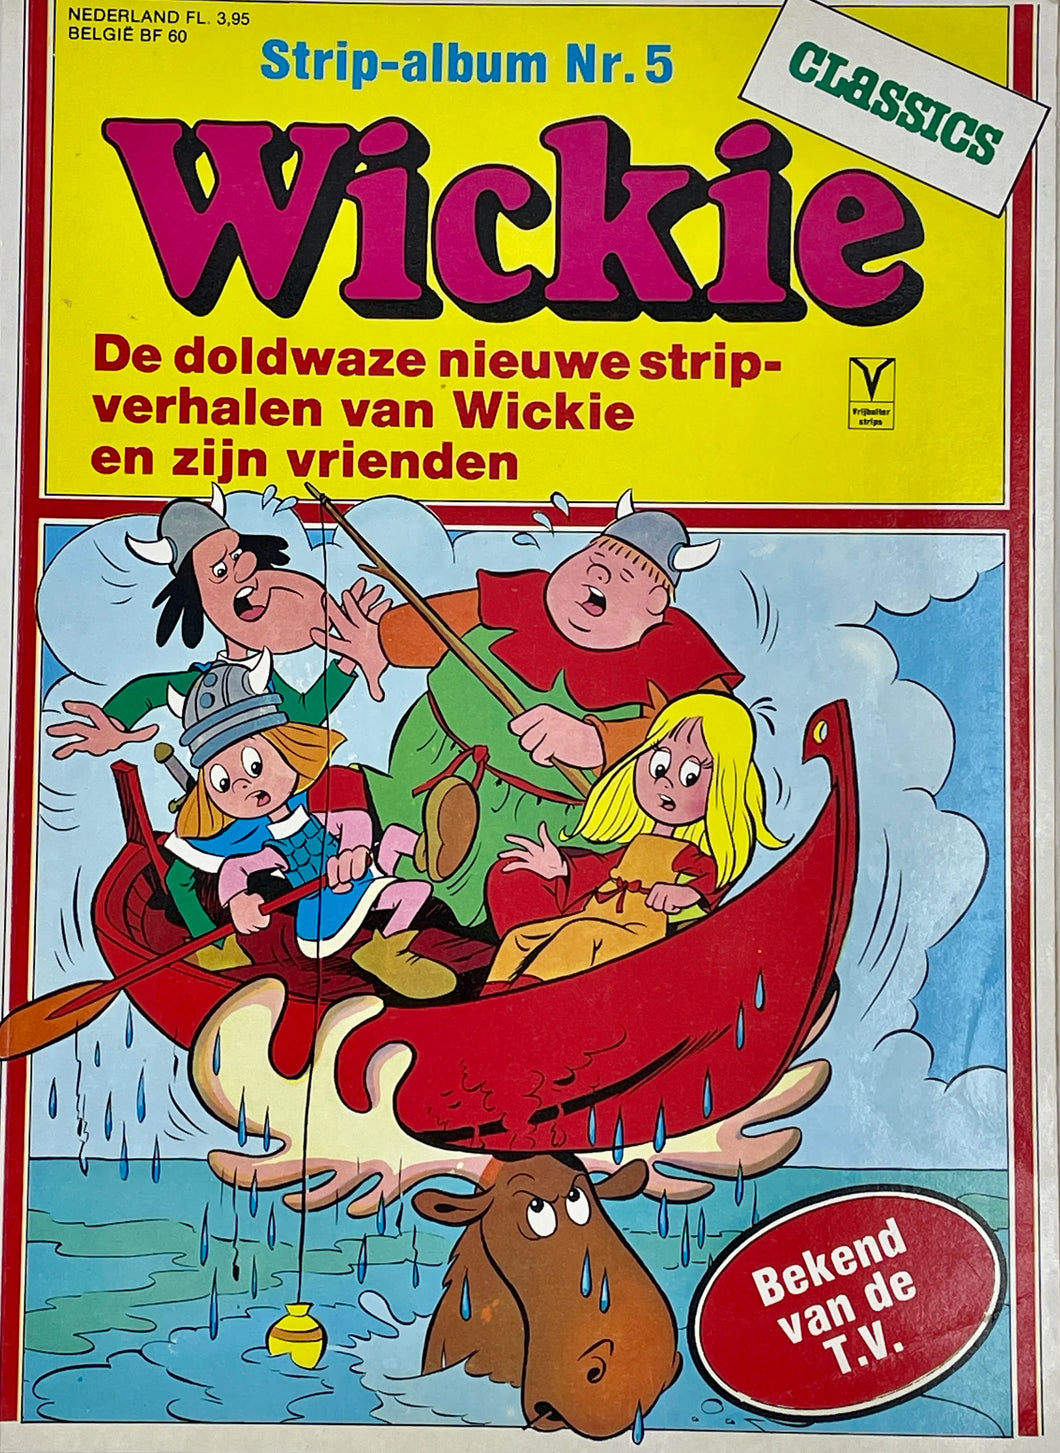 Wickie strip-album nr 5